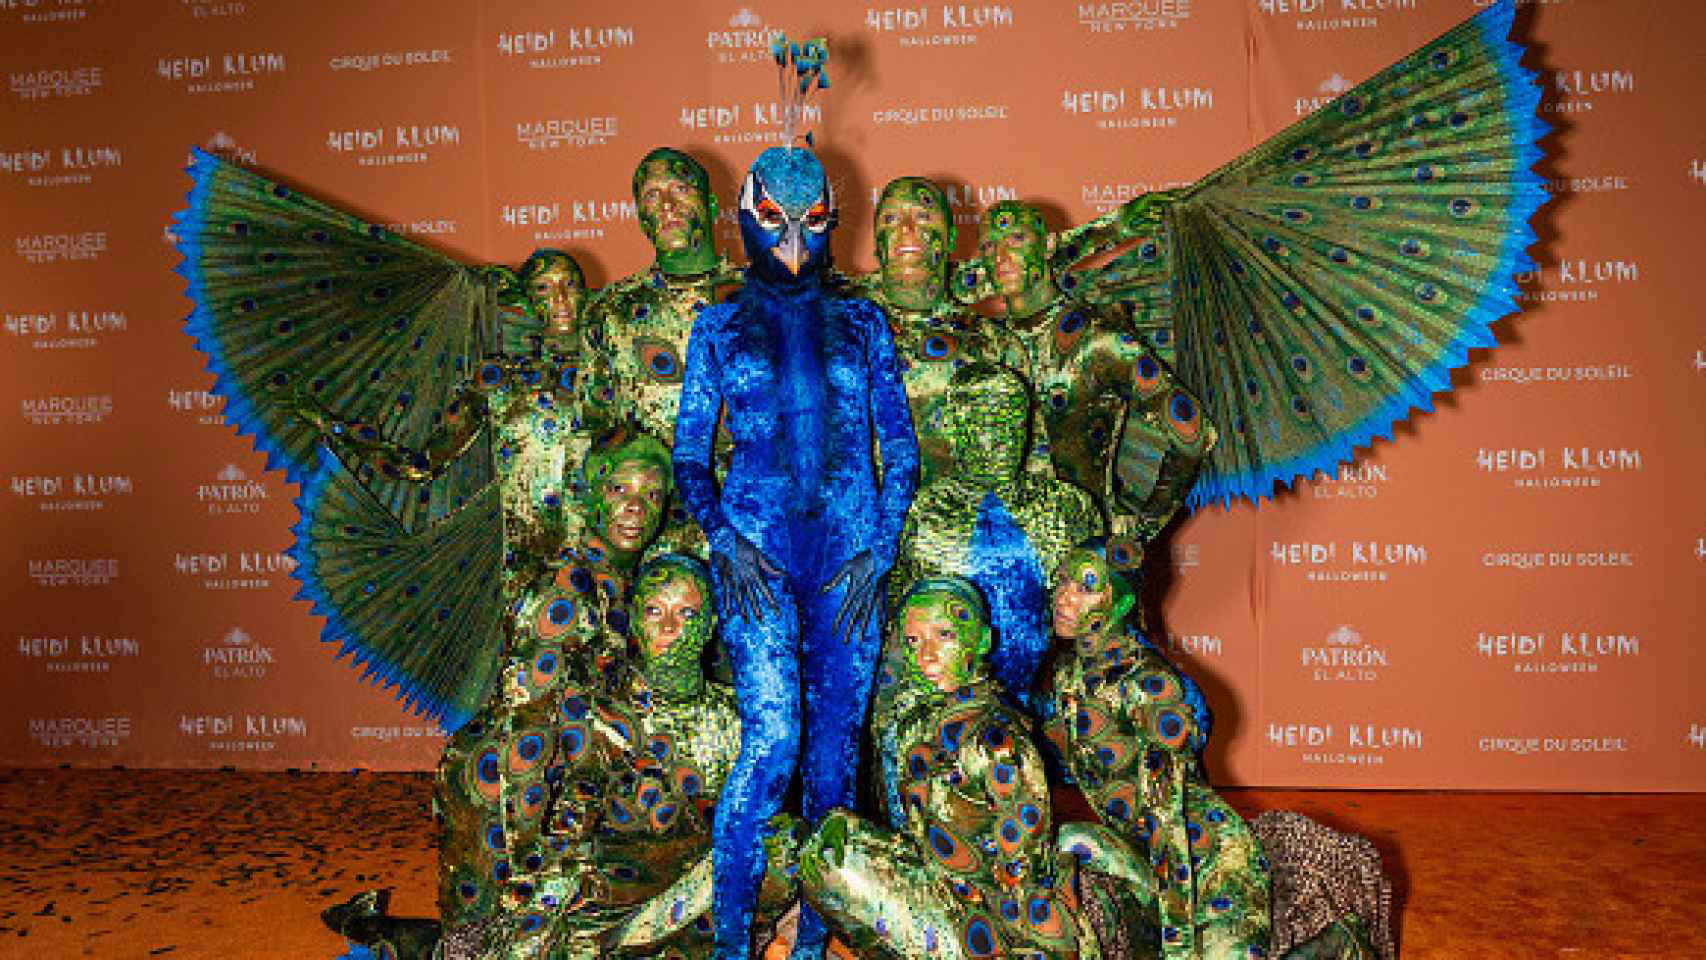 Halloween tiene reina: Heidi Klum asombra con disfraz de pavo real junto al  Cirque du Soleil